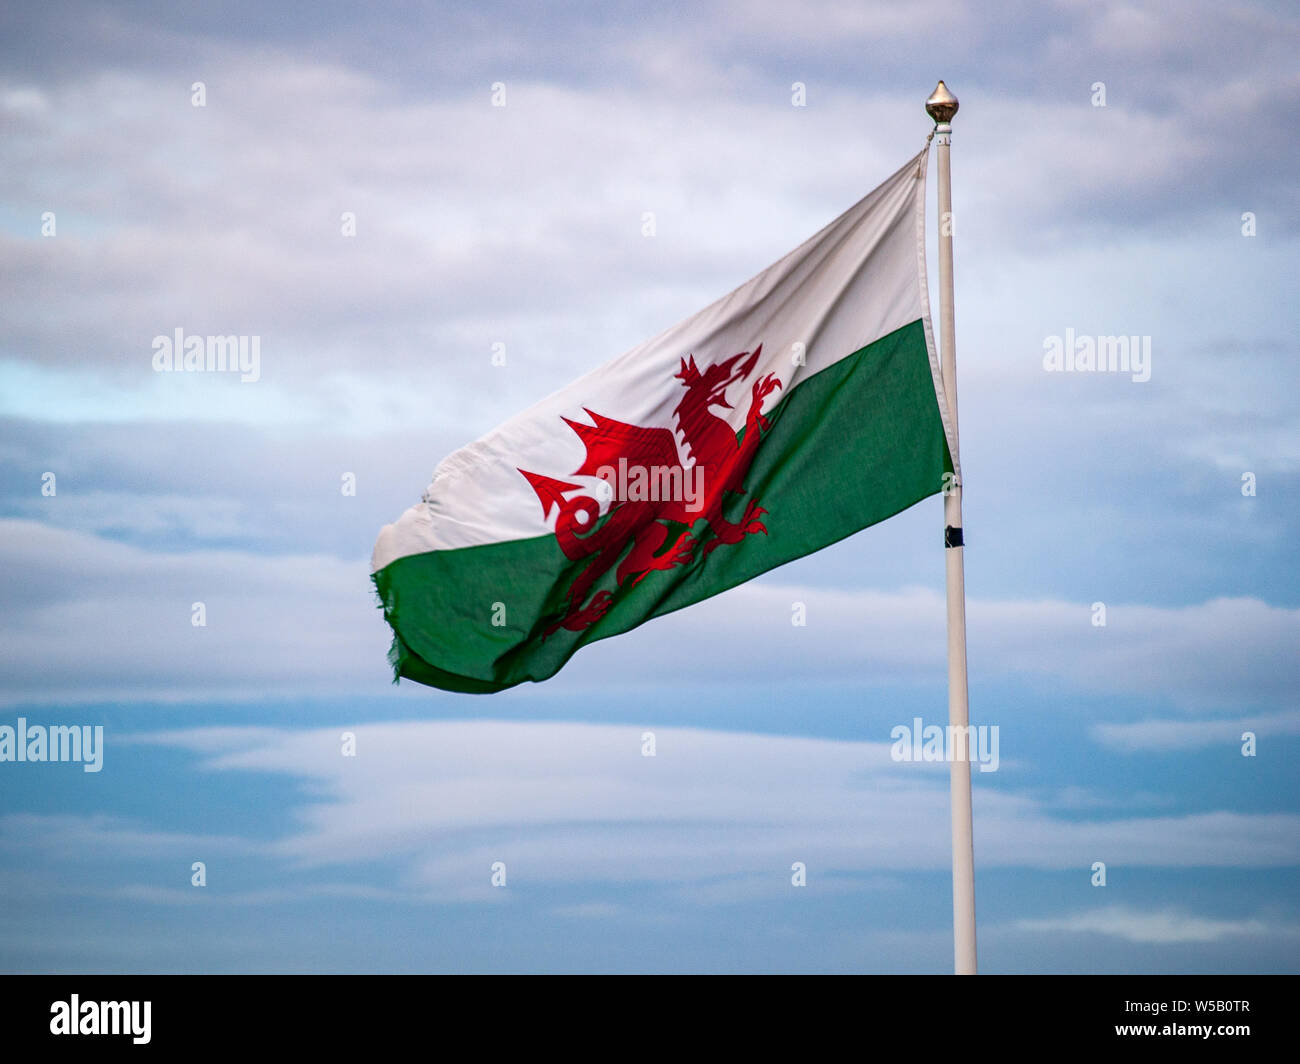 Drapeau national du pays de Galles sur mât à Swansea. Aussi connu comme 'Y Ddraig Goch' 'le dragon rouge'. Pays de Galles, Royaume-Uni. Banque D'Images